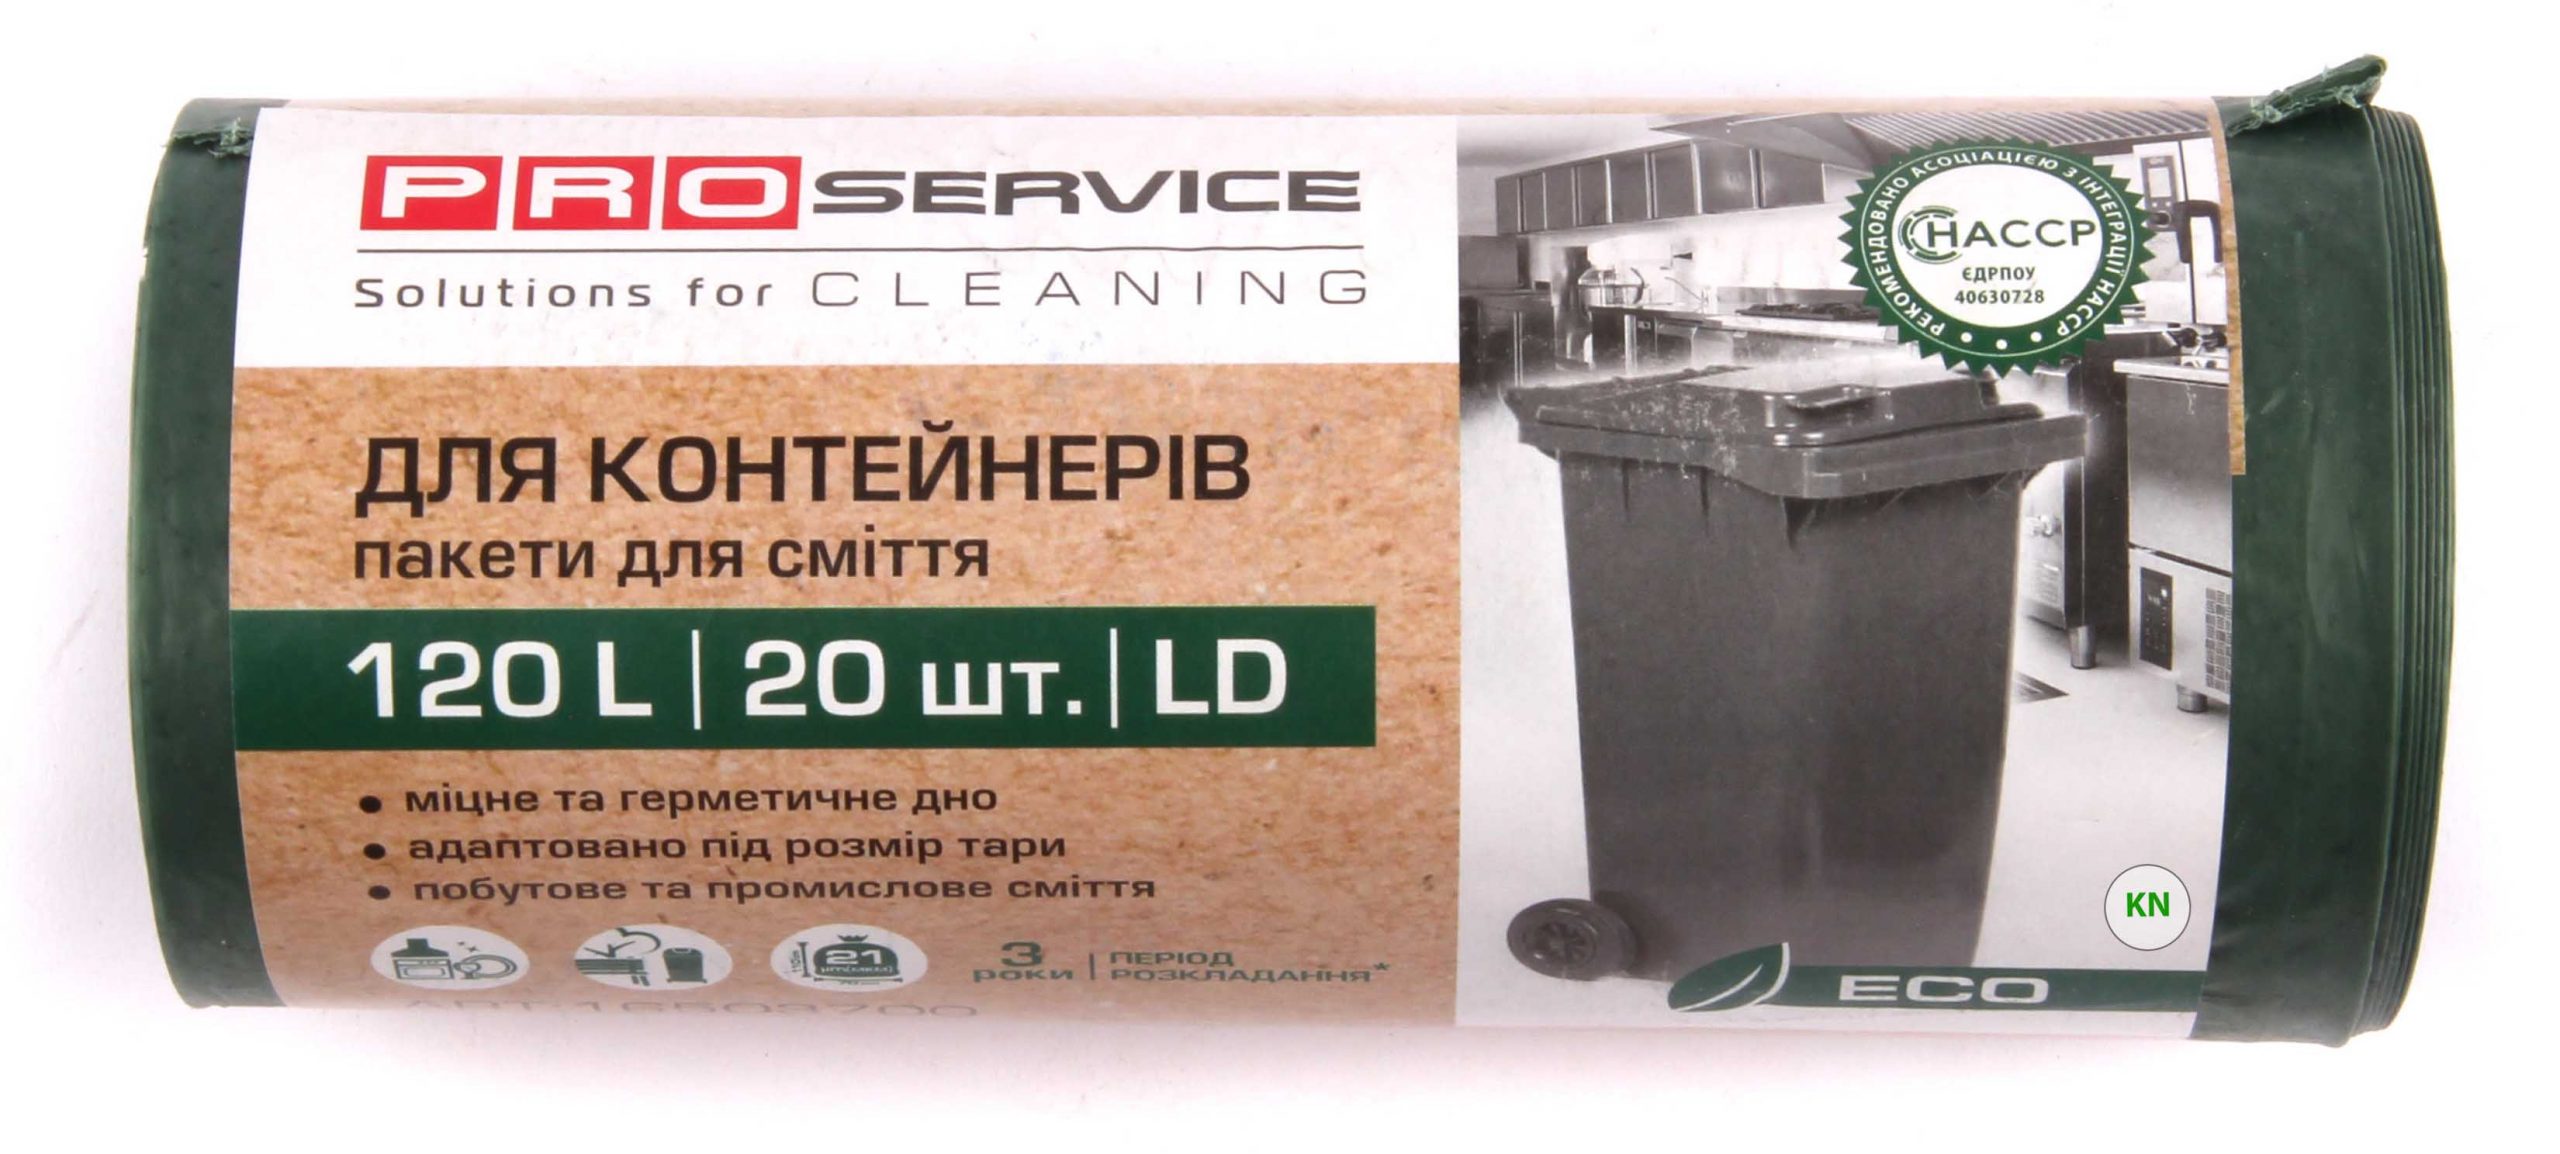 Пакети для сміття зелені LD, 120 л, 20 шт.